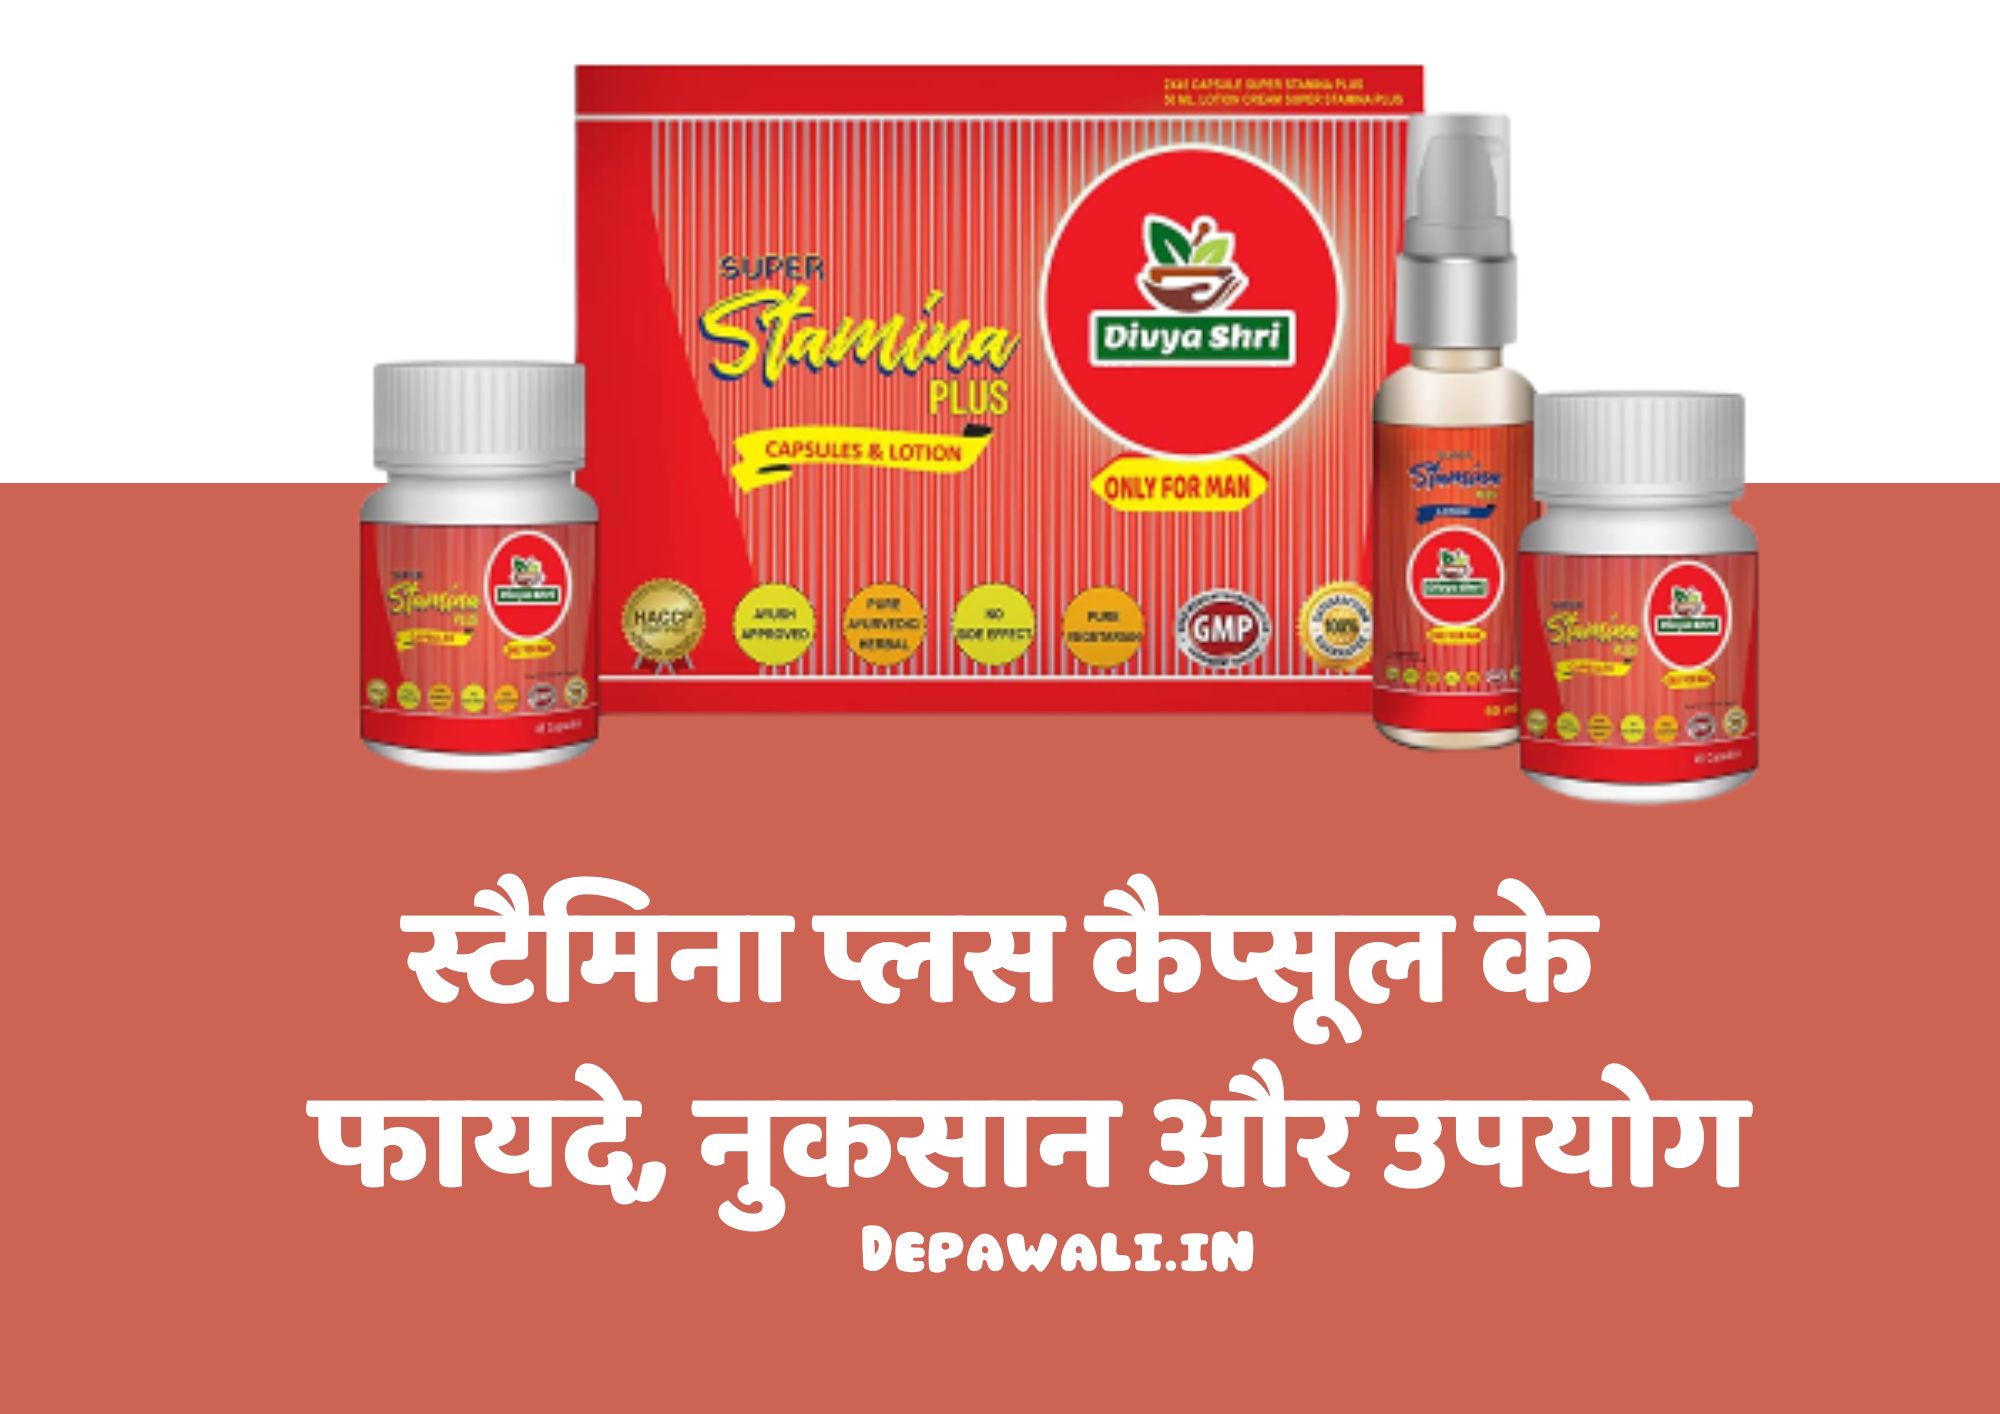 स्टैमिना प्लस कैप्सूल के फायदे, नुकसान और उपयोग - Stamina Plus Capsule Benefits In Hindi - Stamina Plus Capsule In Hindi